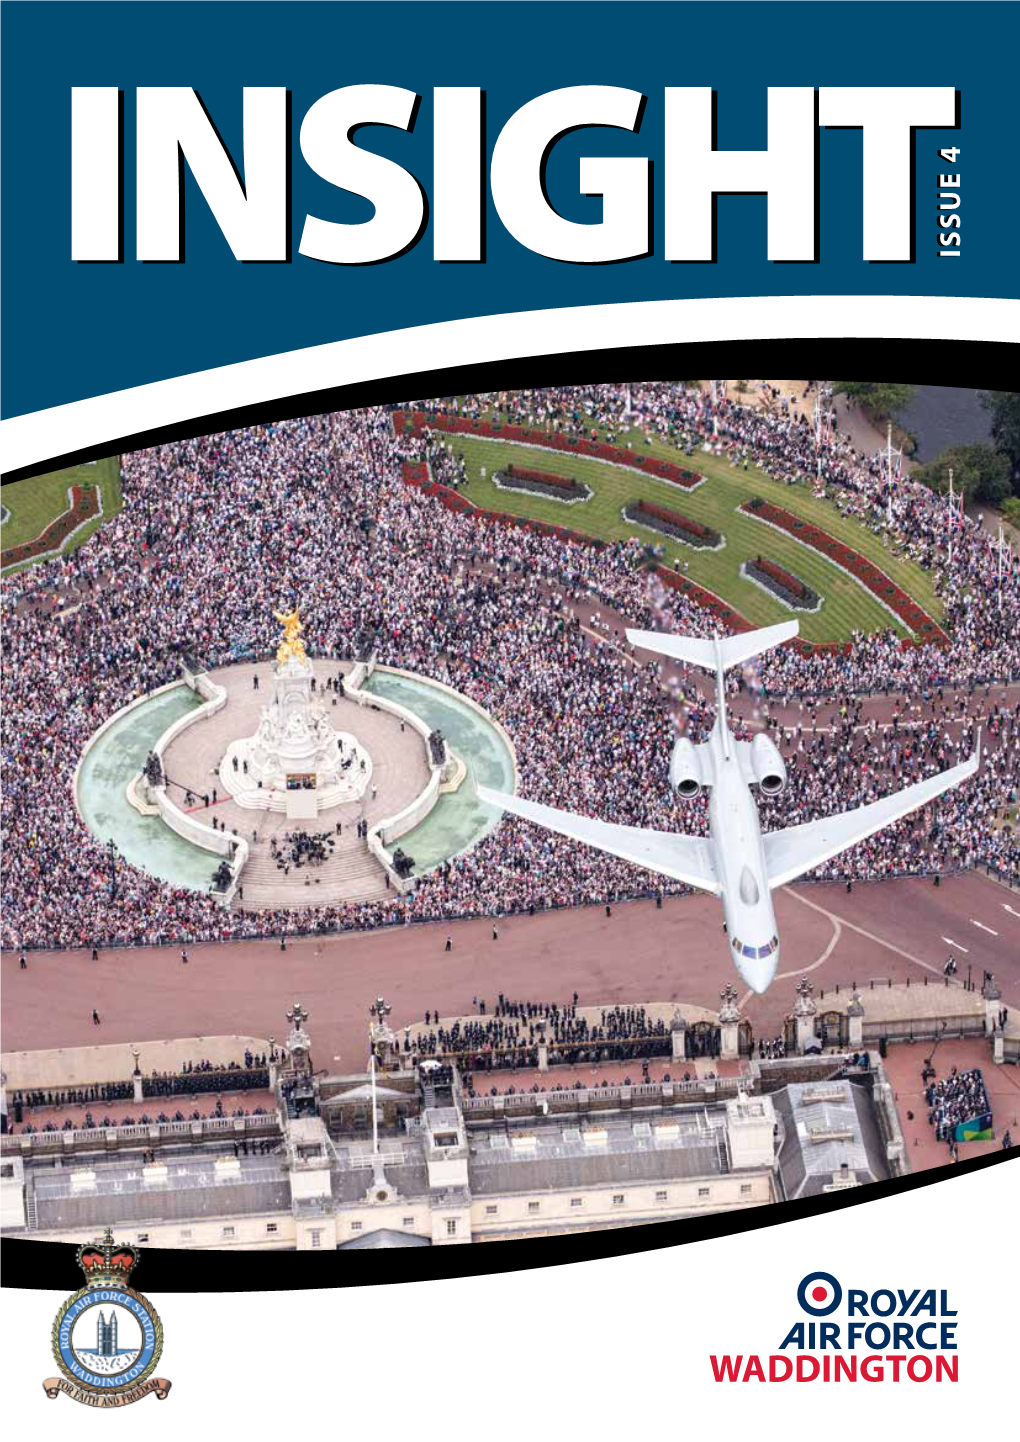 Issue 4 Insightinsight Issue 4